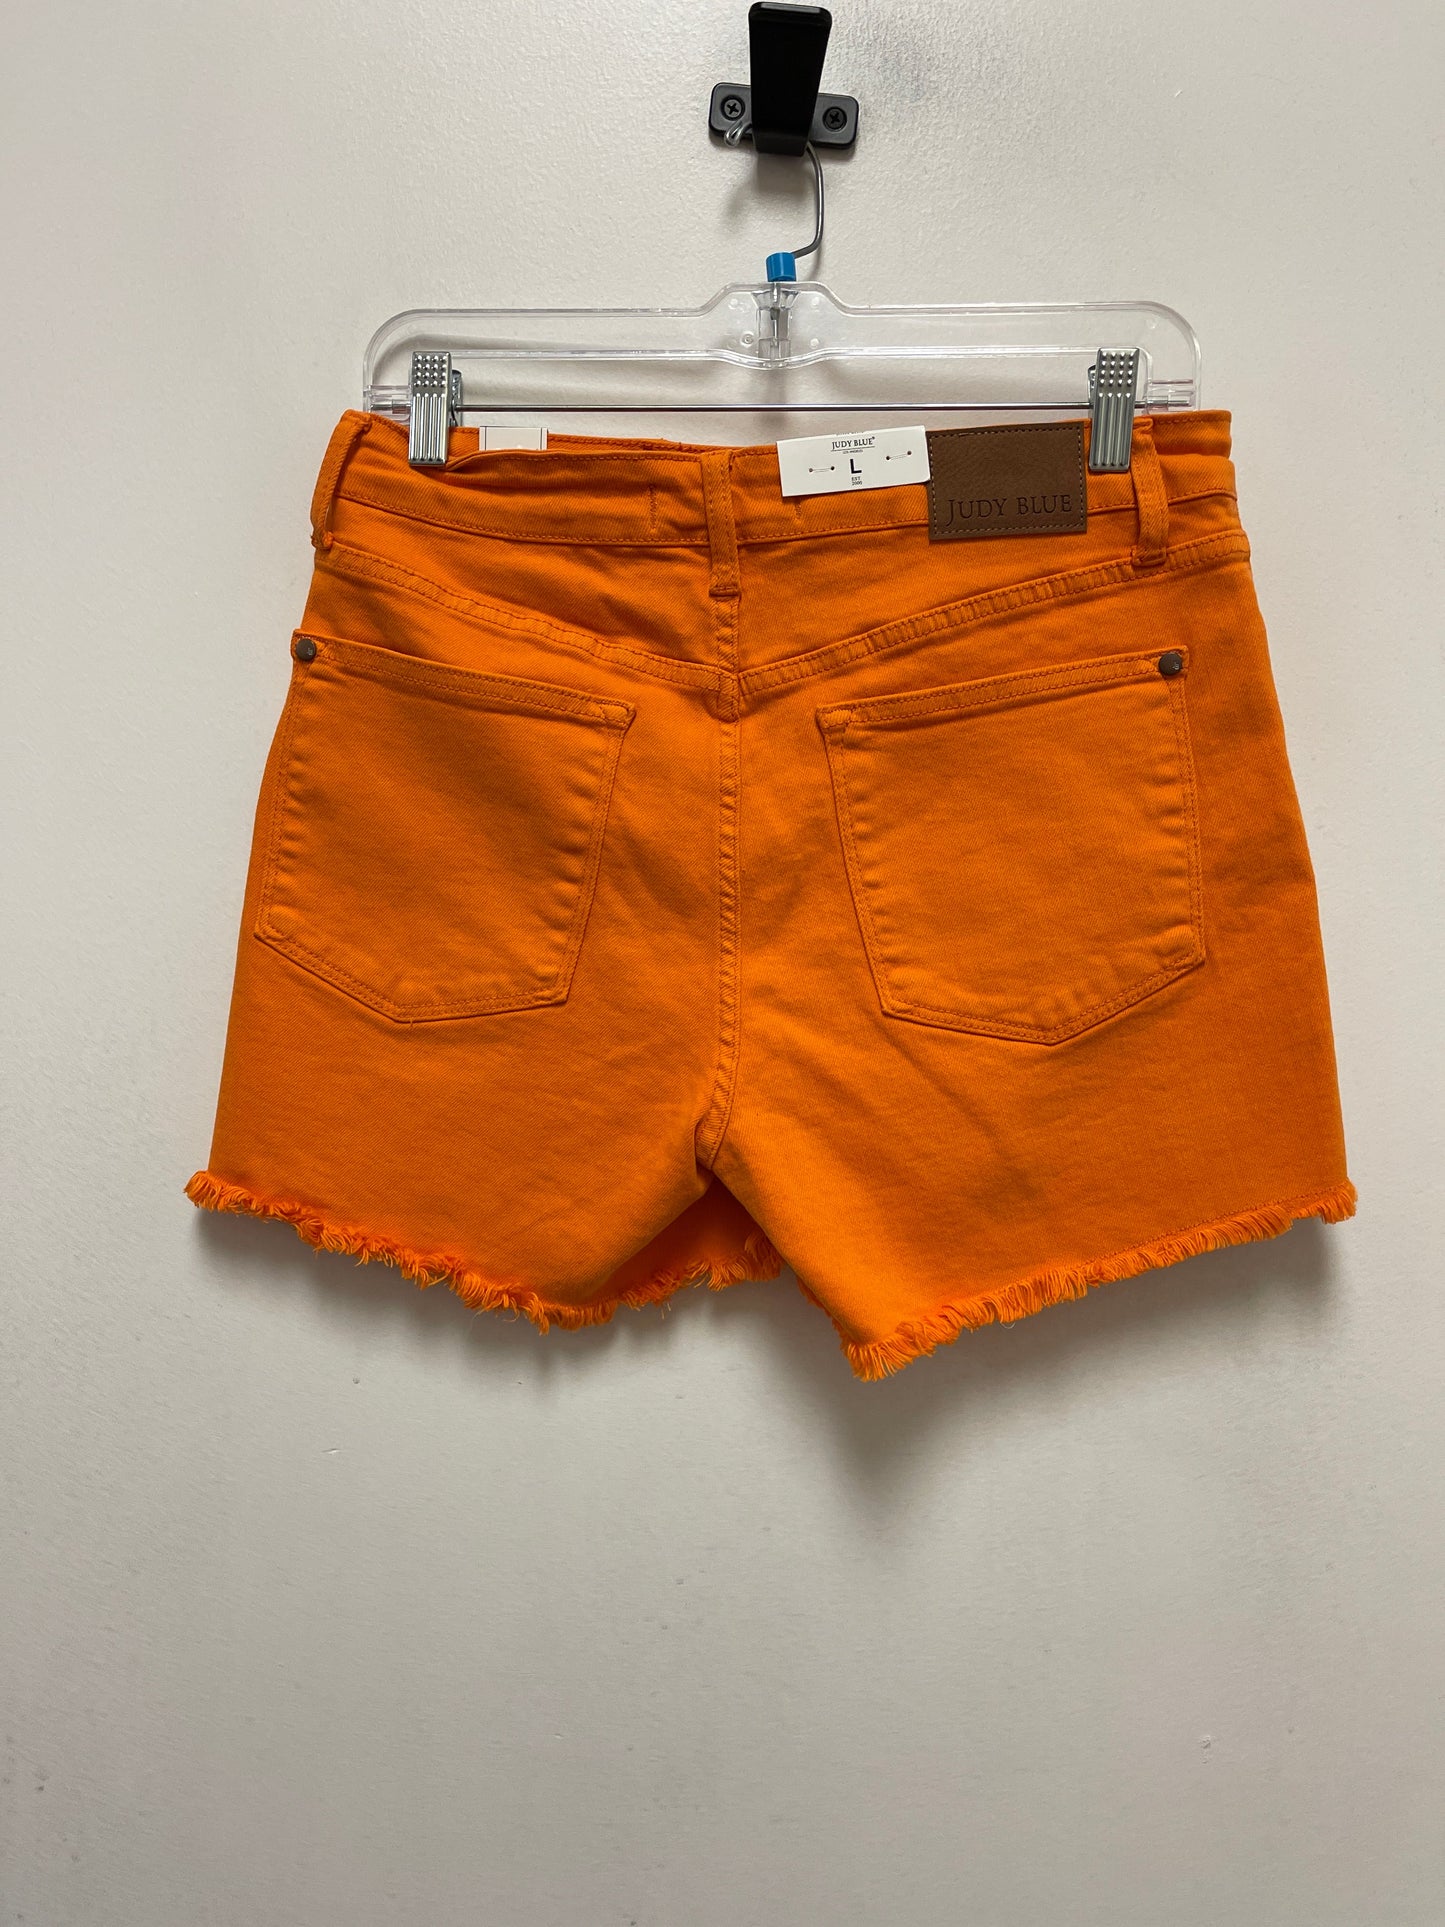 Orange Shorts Judy Blue, Size 12